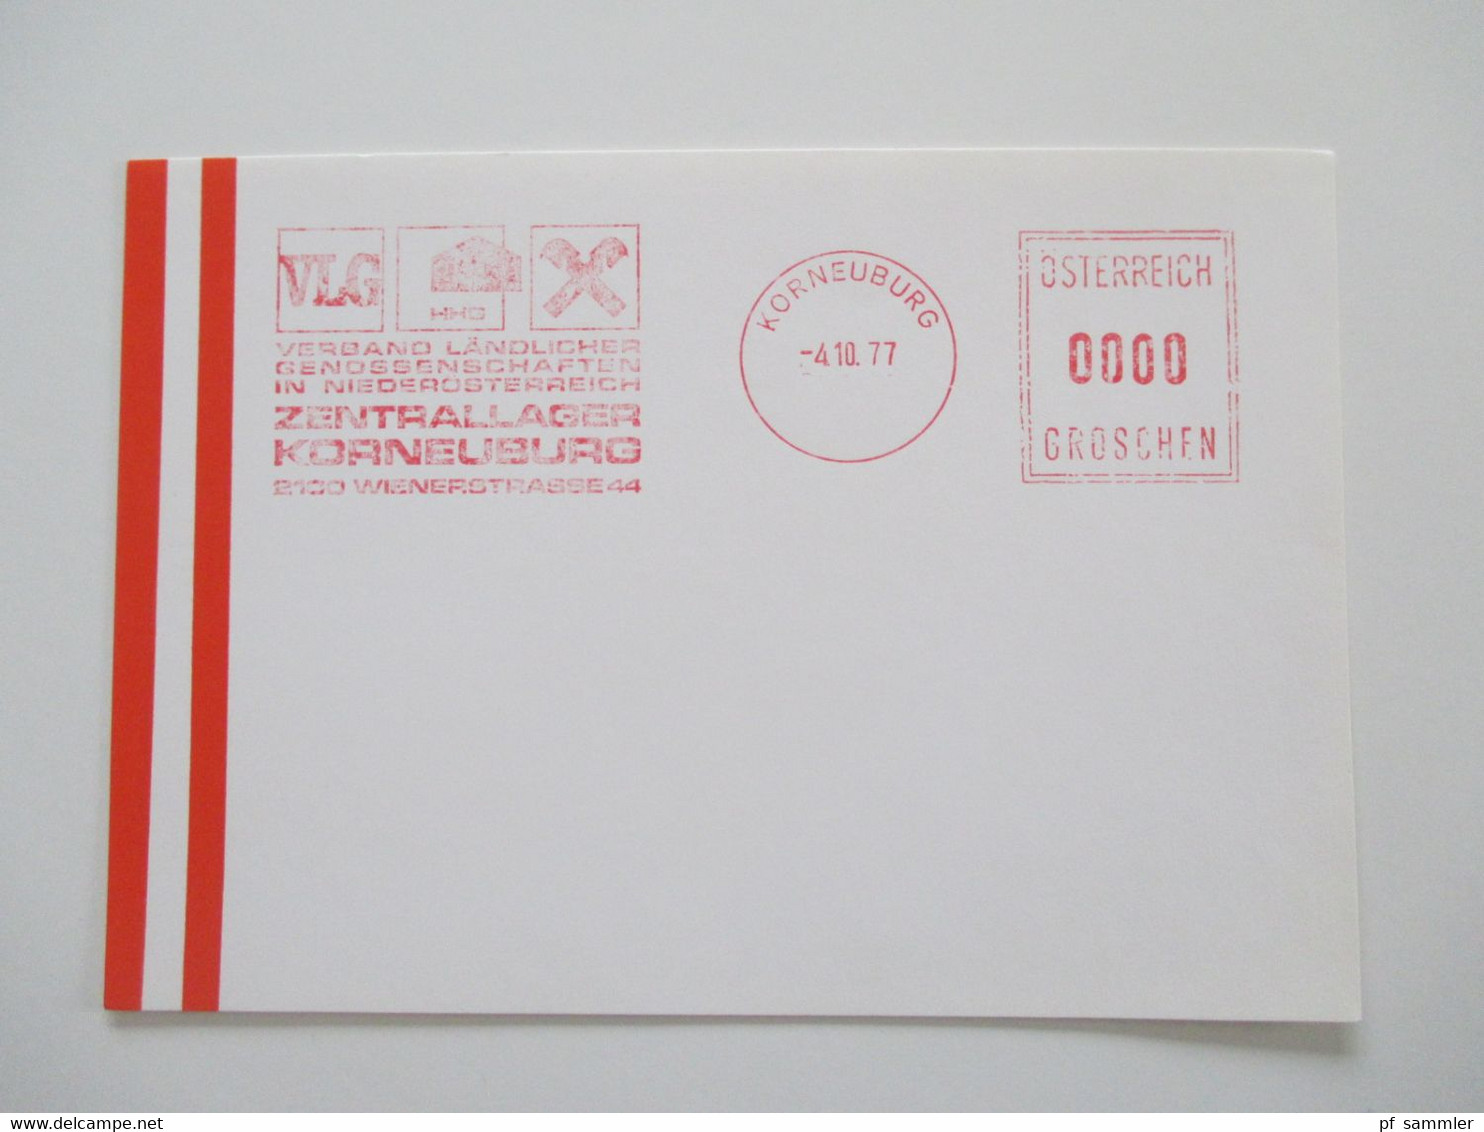 Österreich 1976 - 78 Freistempel Mit Wert 0000 Groschen Insgesamt 29 Stempelbelege / Blanko Karten Alles Verschiedene St - Briefe U. Dokumente